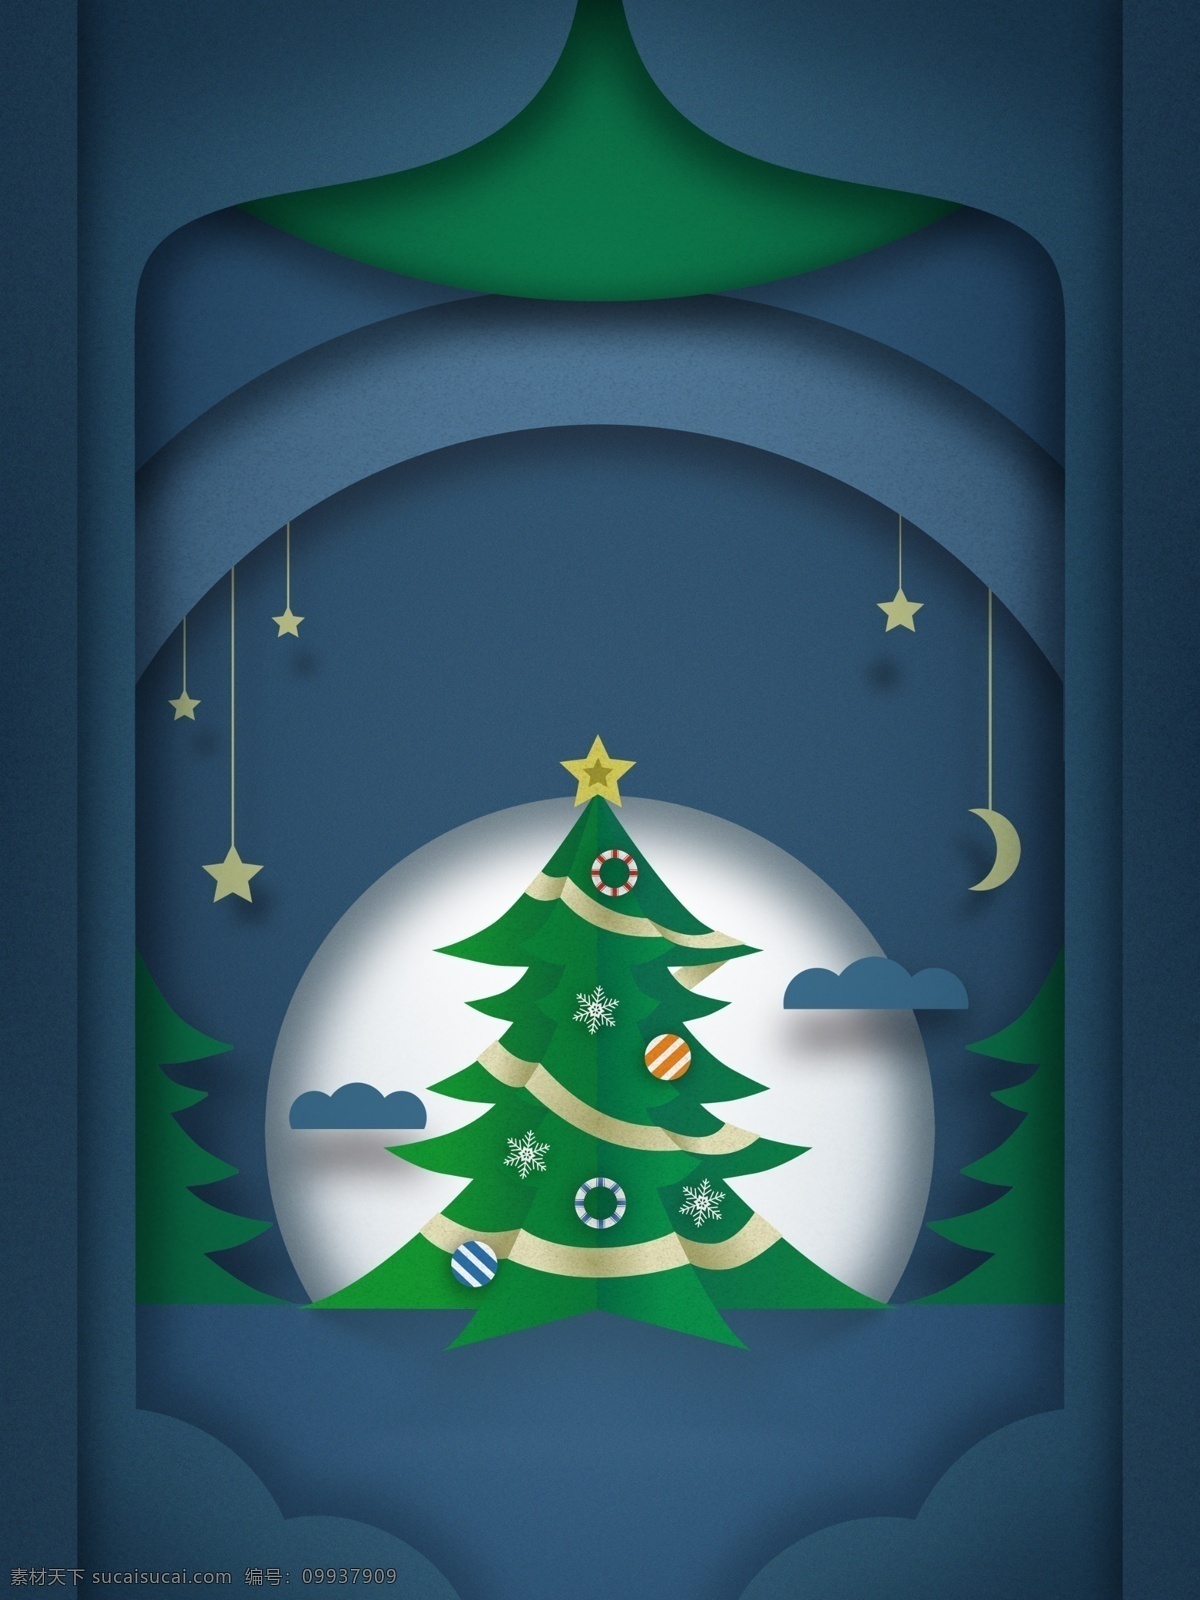 立体 绿色 圣诞树 屋 广告 背景 月亮 星星 背景素材 屋子 圣诞节背景 圣诞来了 圣诞背景 平安夜 圣诞老人 圣诞活动背景 节日背景 广告背景